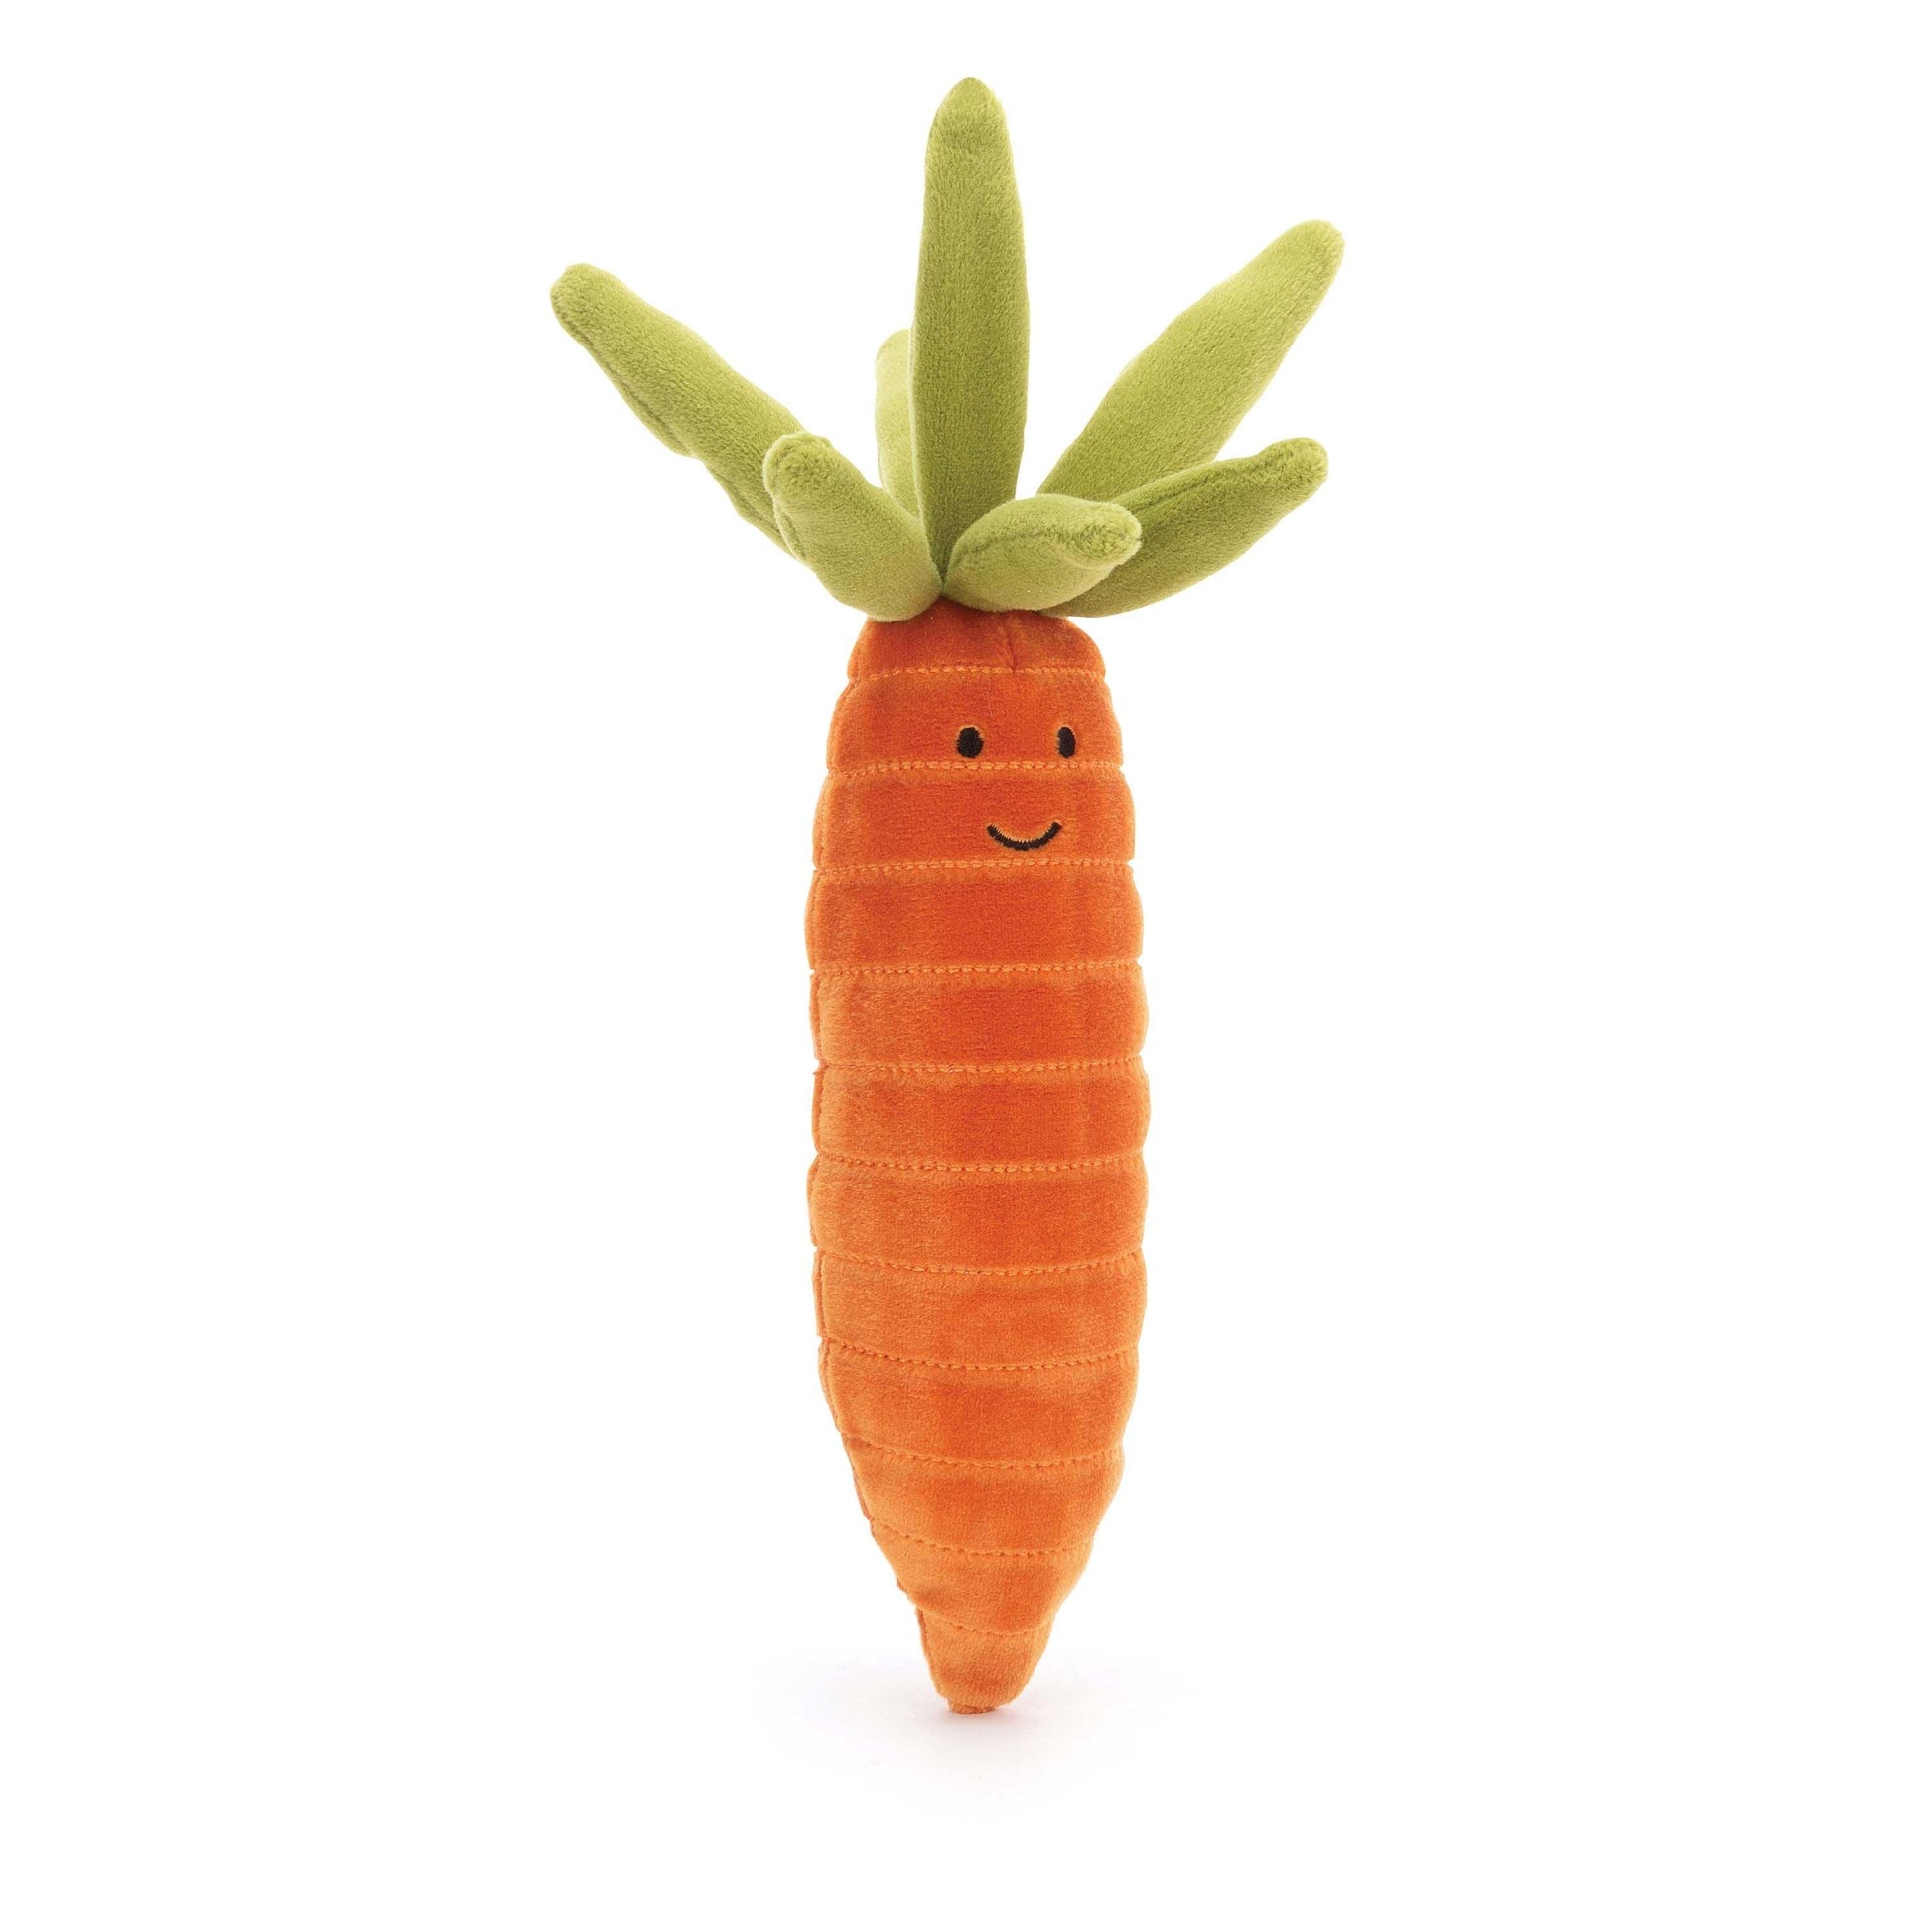 Jellycat - Vivacious Vegetable - Carrot - Handworks Nouveau Paperie